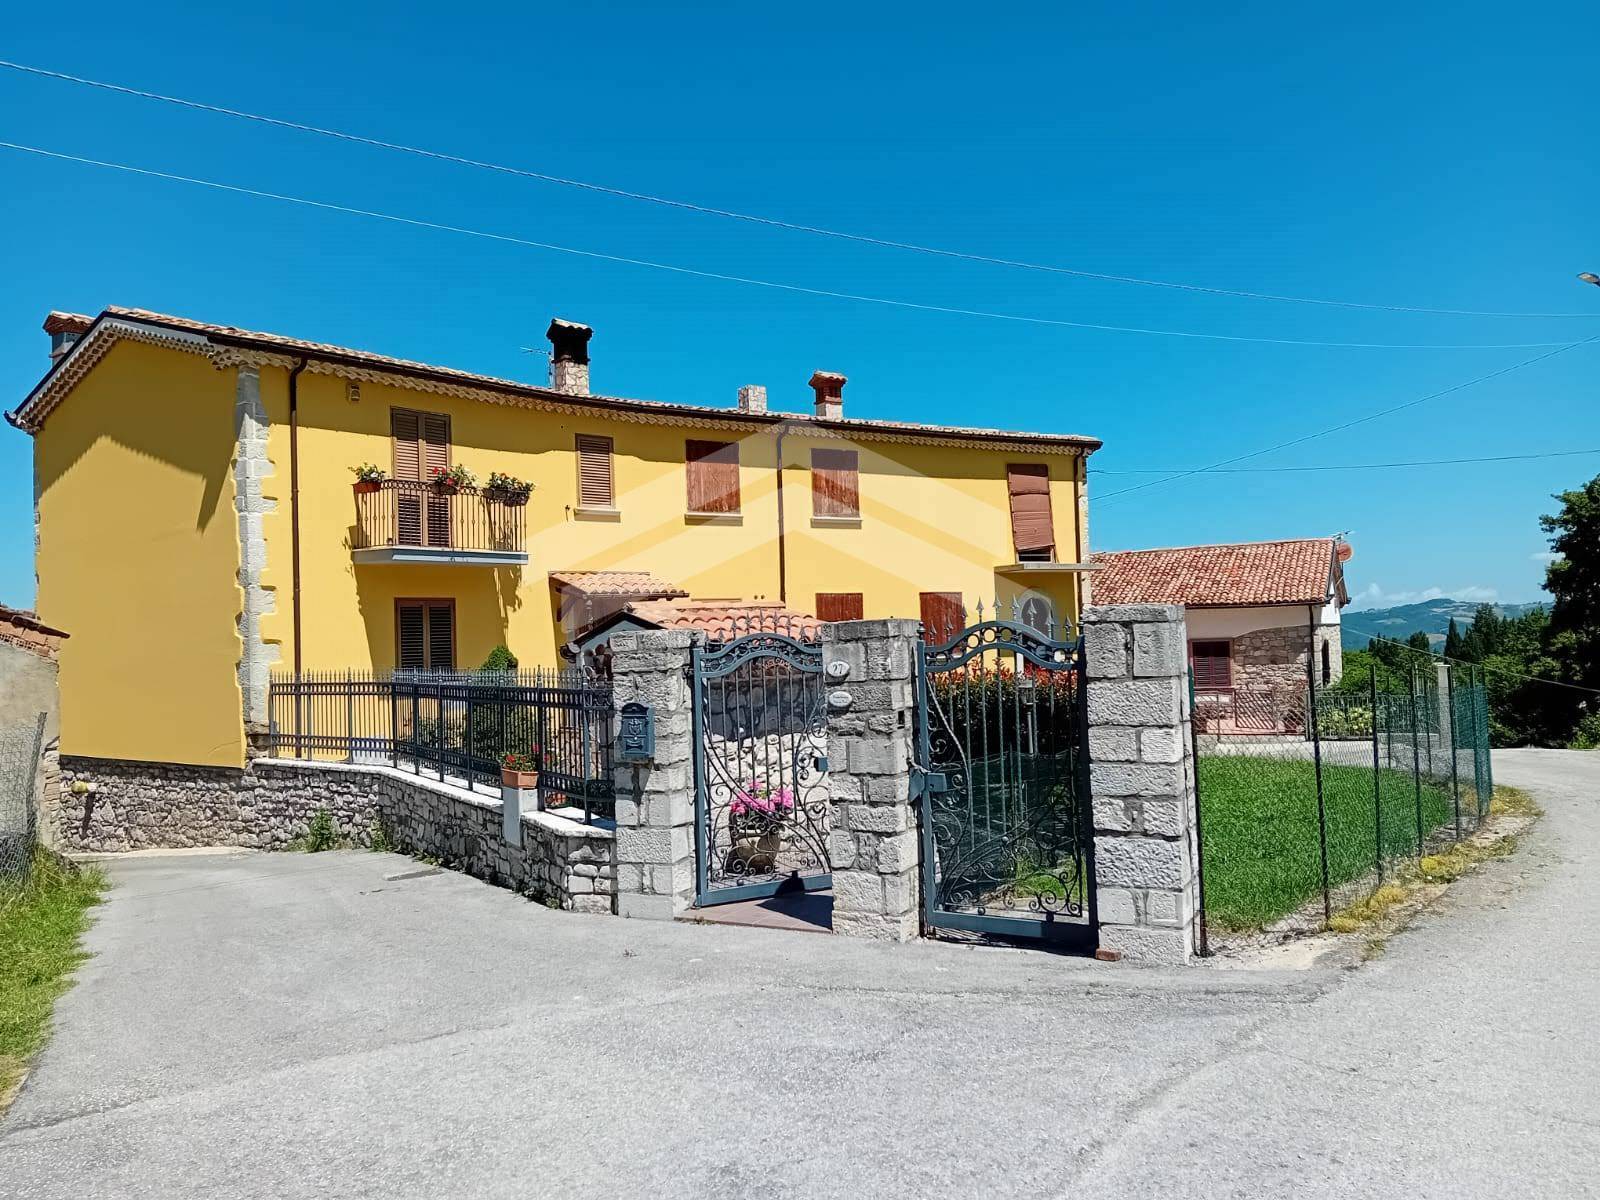 Villa Bifamiliare in vendita a Guardiaregia, 6 locali, prezzo € 70.000 | PortaleAgenzieImmobiliari.it